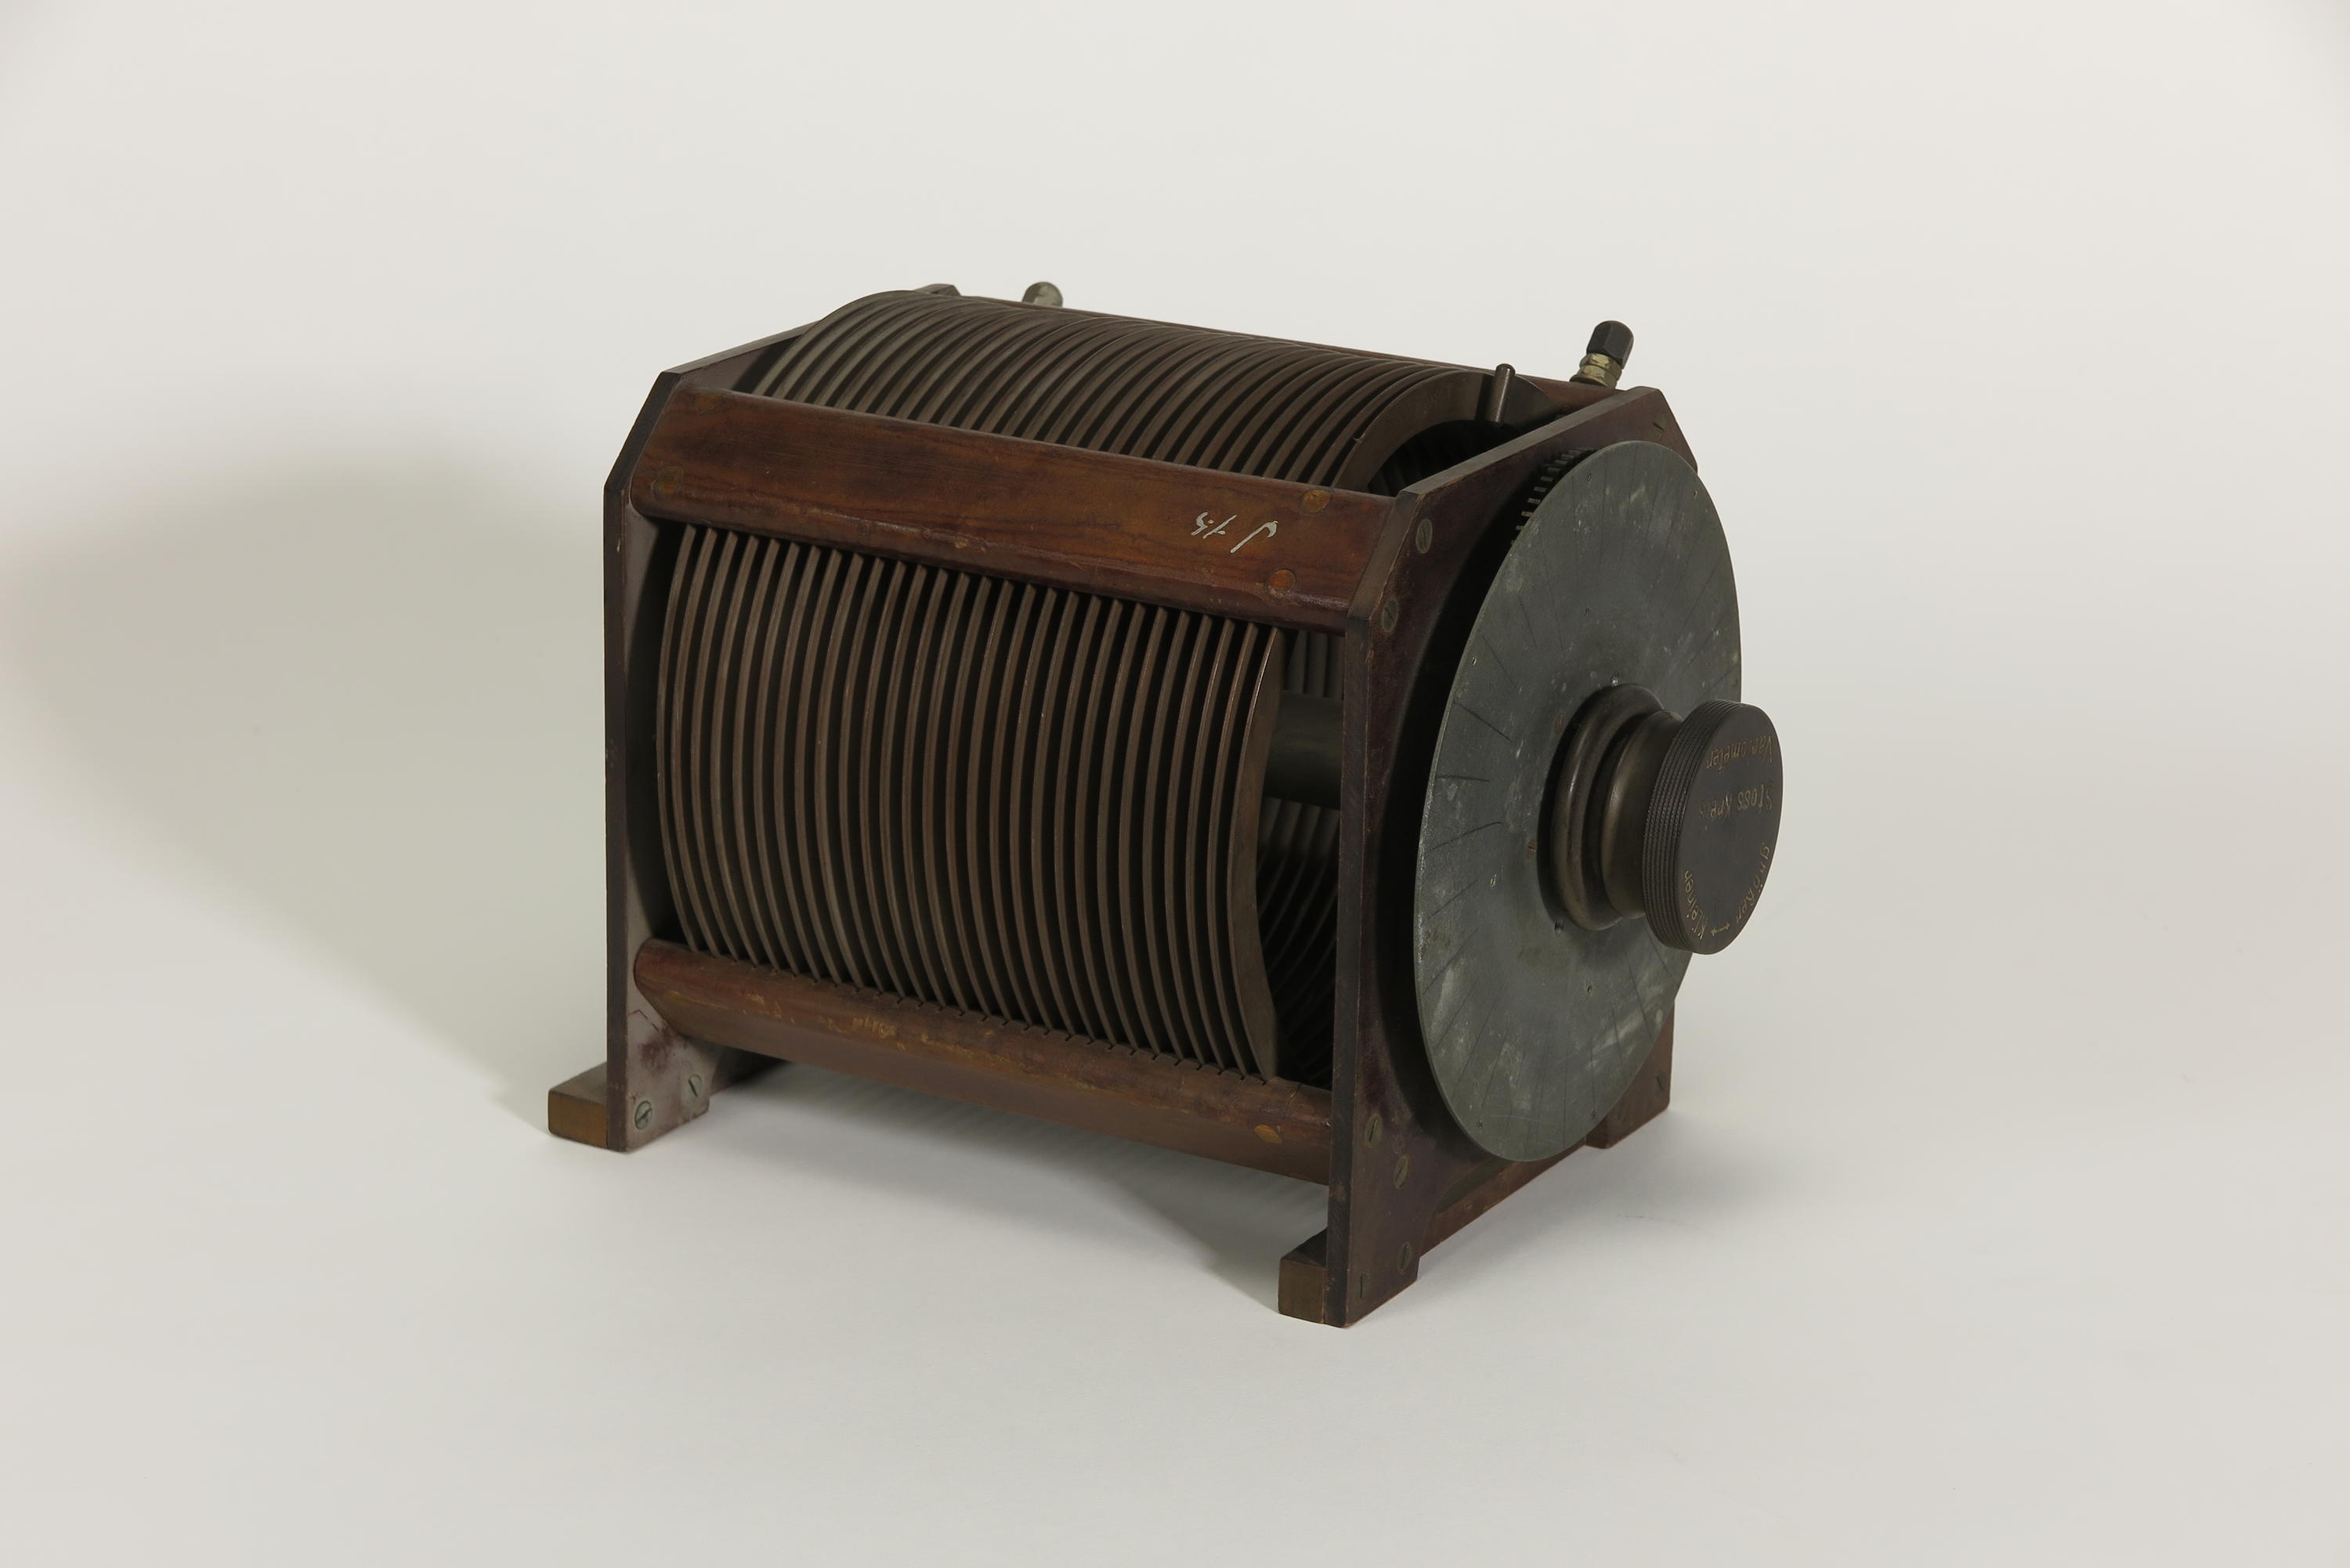 Stoßkreis-Variometer für Telefunken-Sender (Deutsches Technikmuseum CC BY)